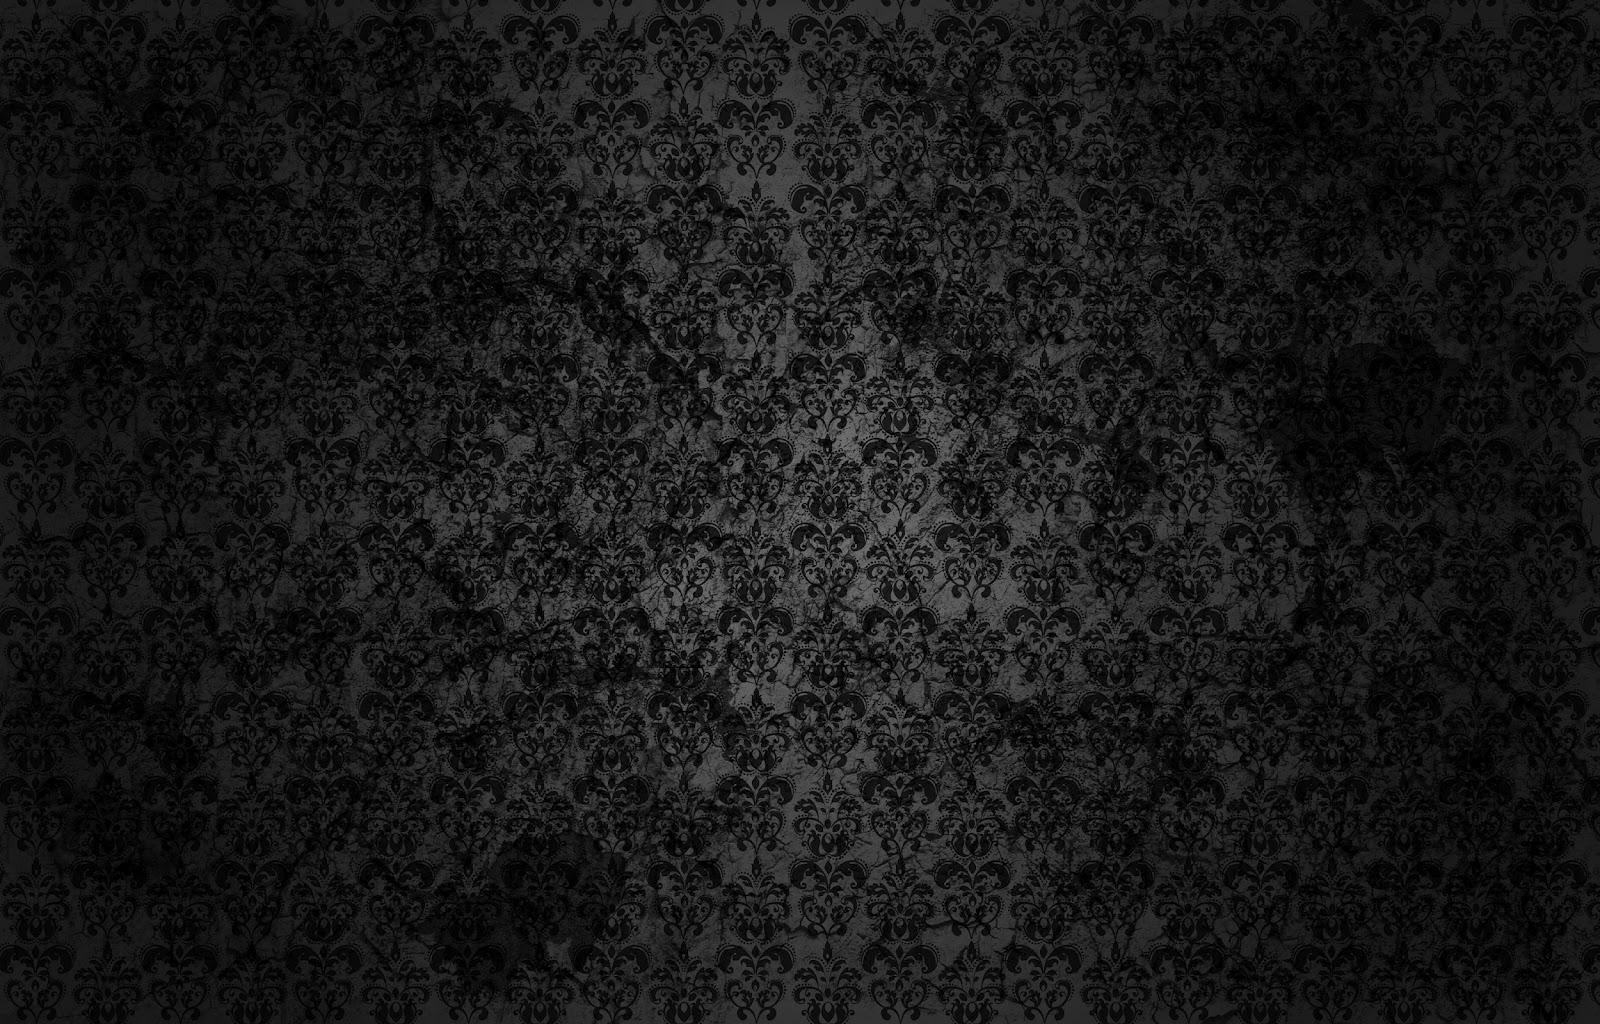 hd wallpapers dark hd wallpapers dark hd wallpapers dark hd wallpapers